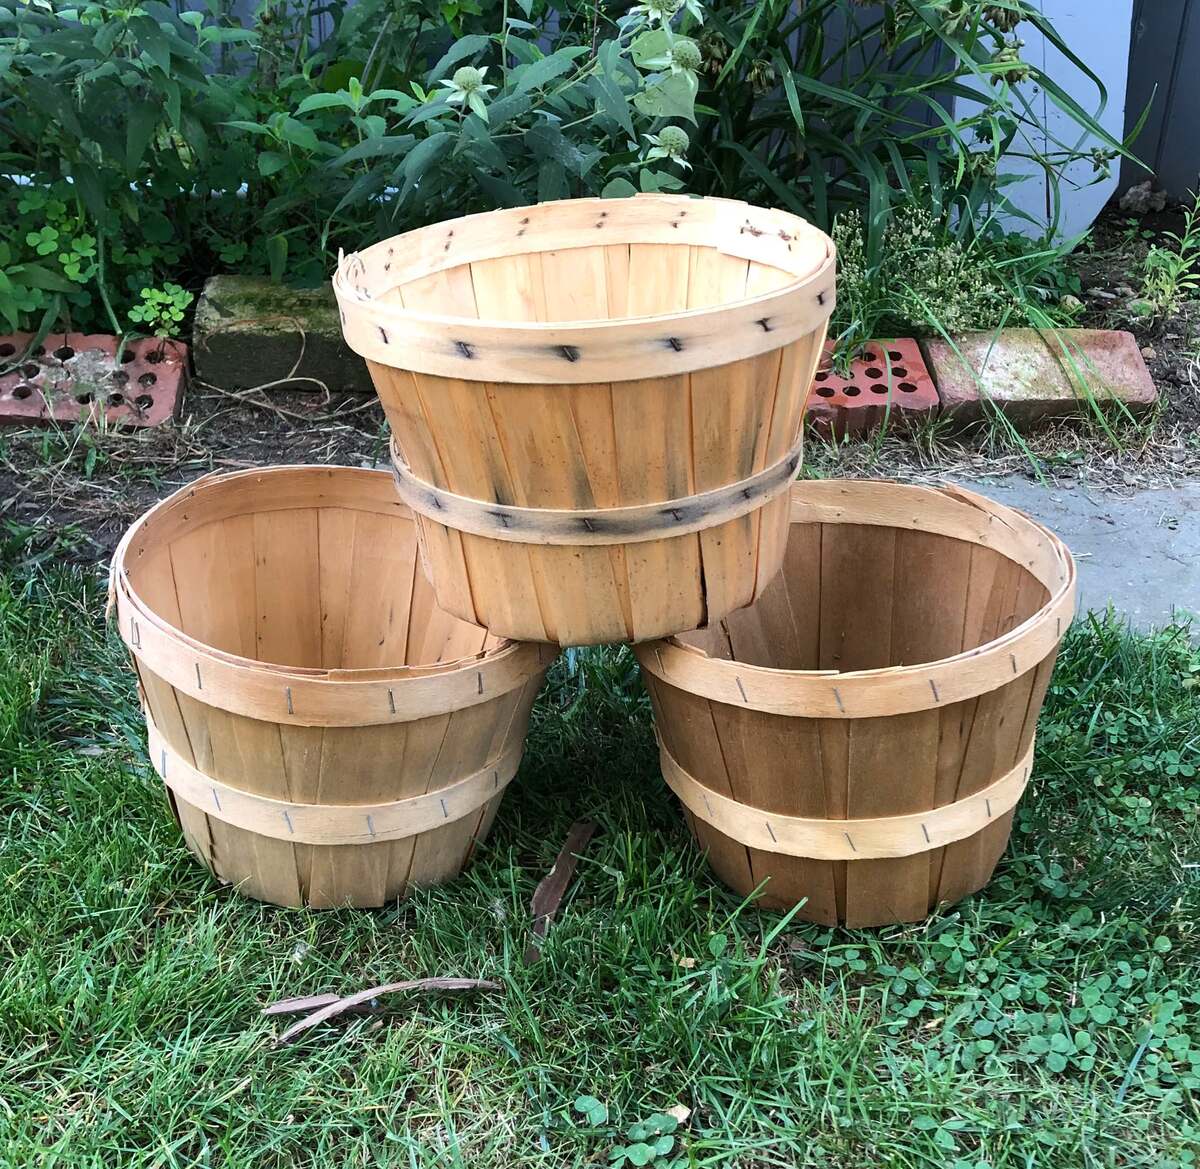 How Many 6-Quart Baskets In A Bushel